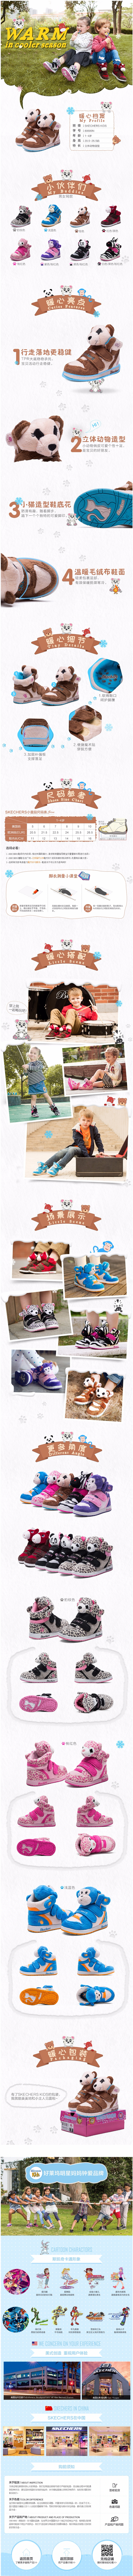 淘宝美工苏木卡通风格  母婴玩具  童鞋  可爱  详情页设计作品